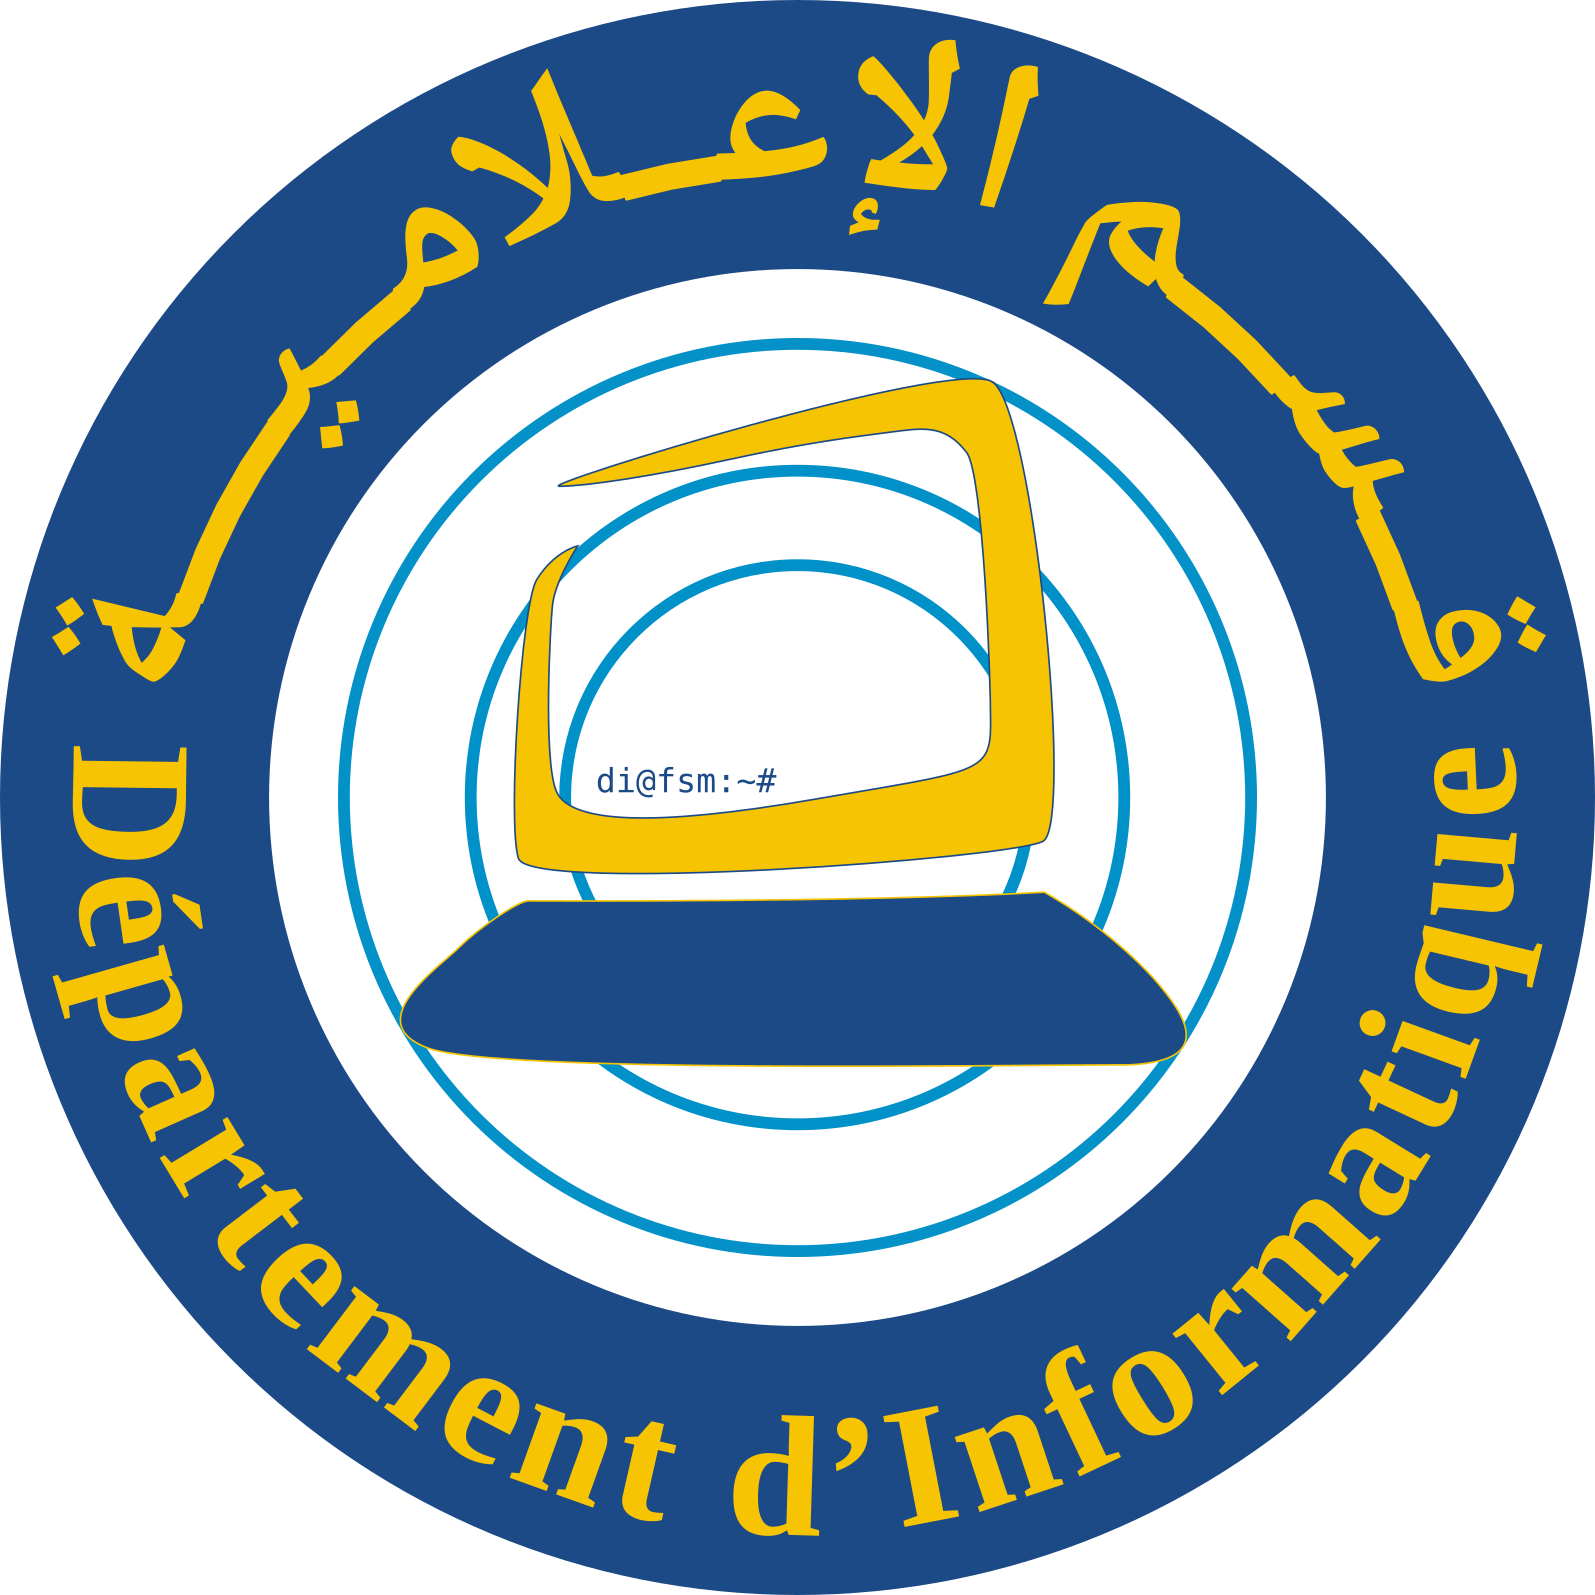 Logo du département